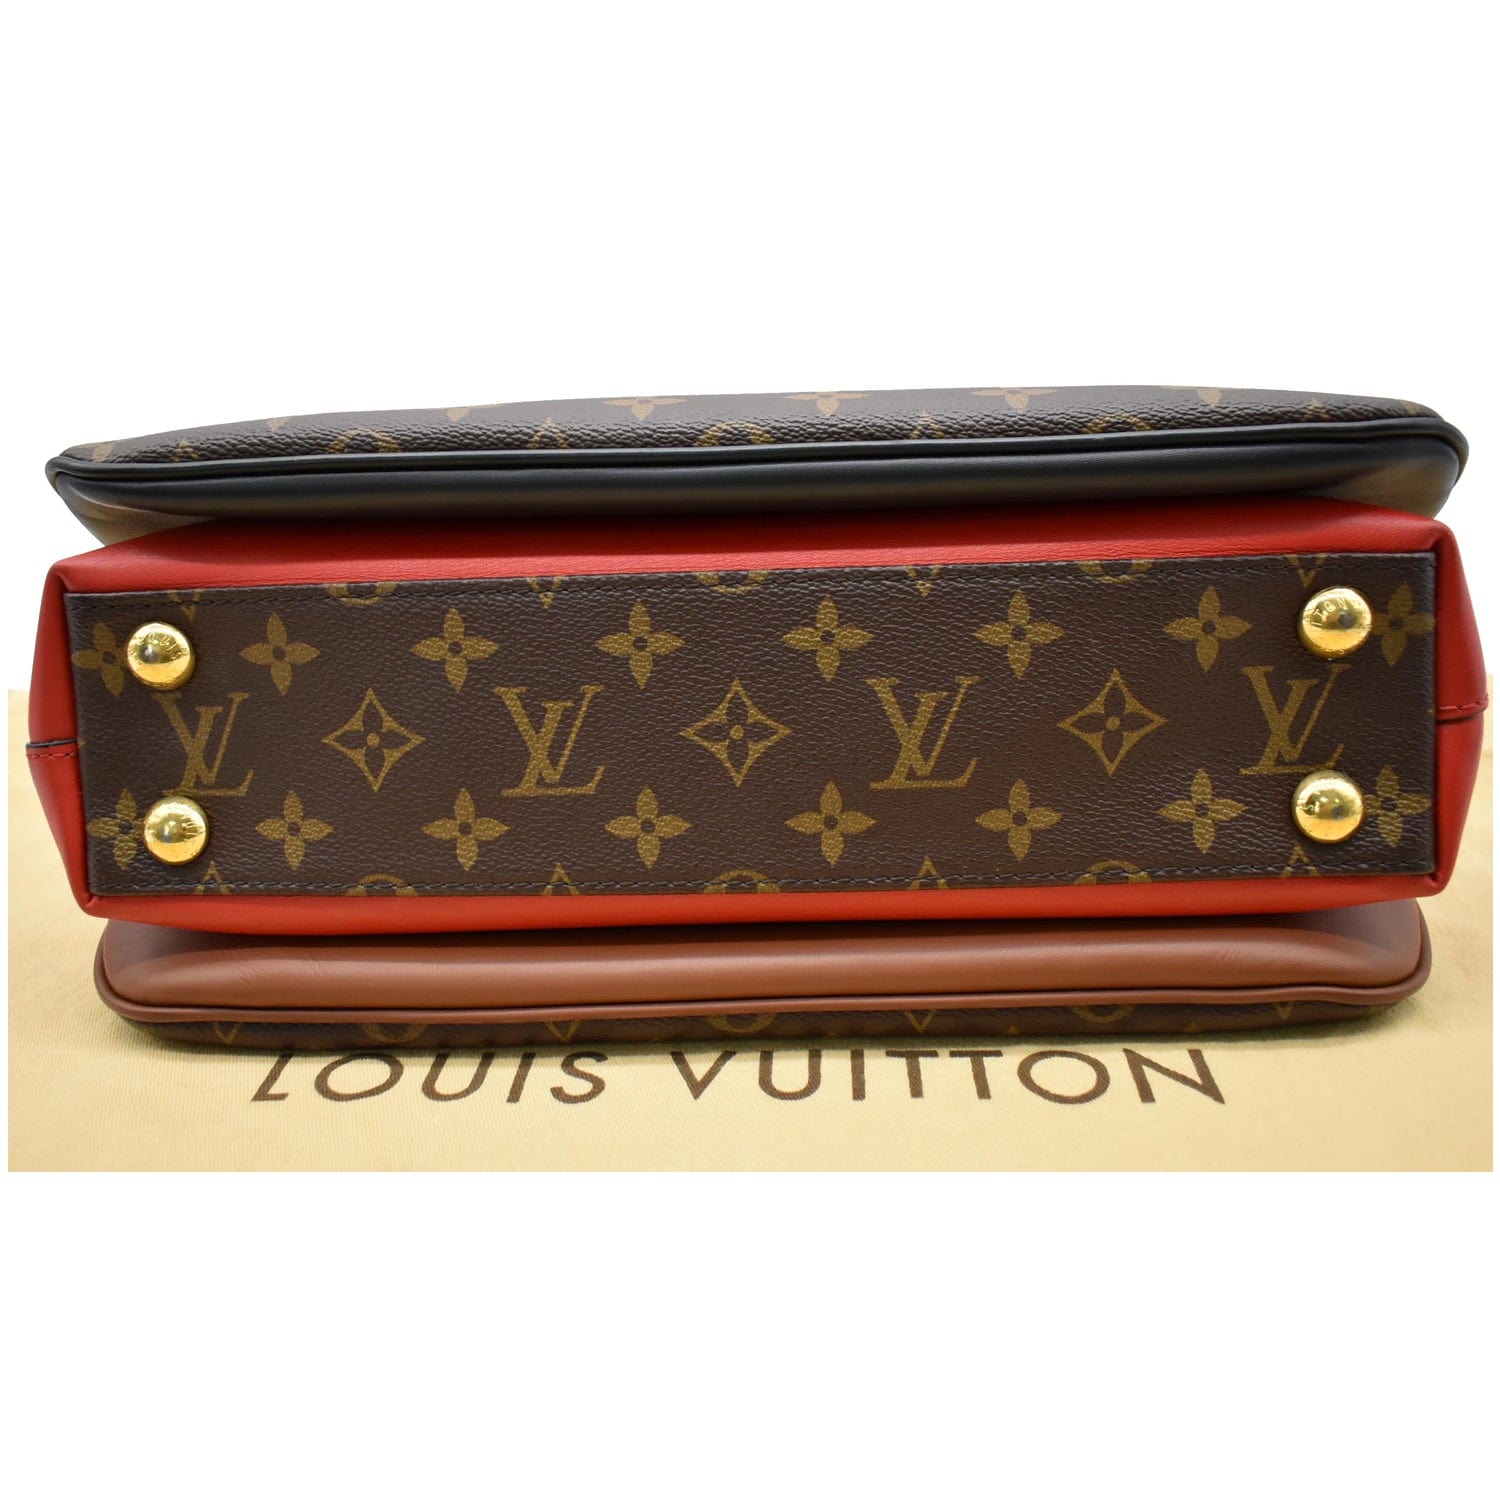 Louis Vuitton LV Millefeuille M44254